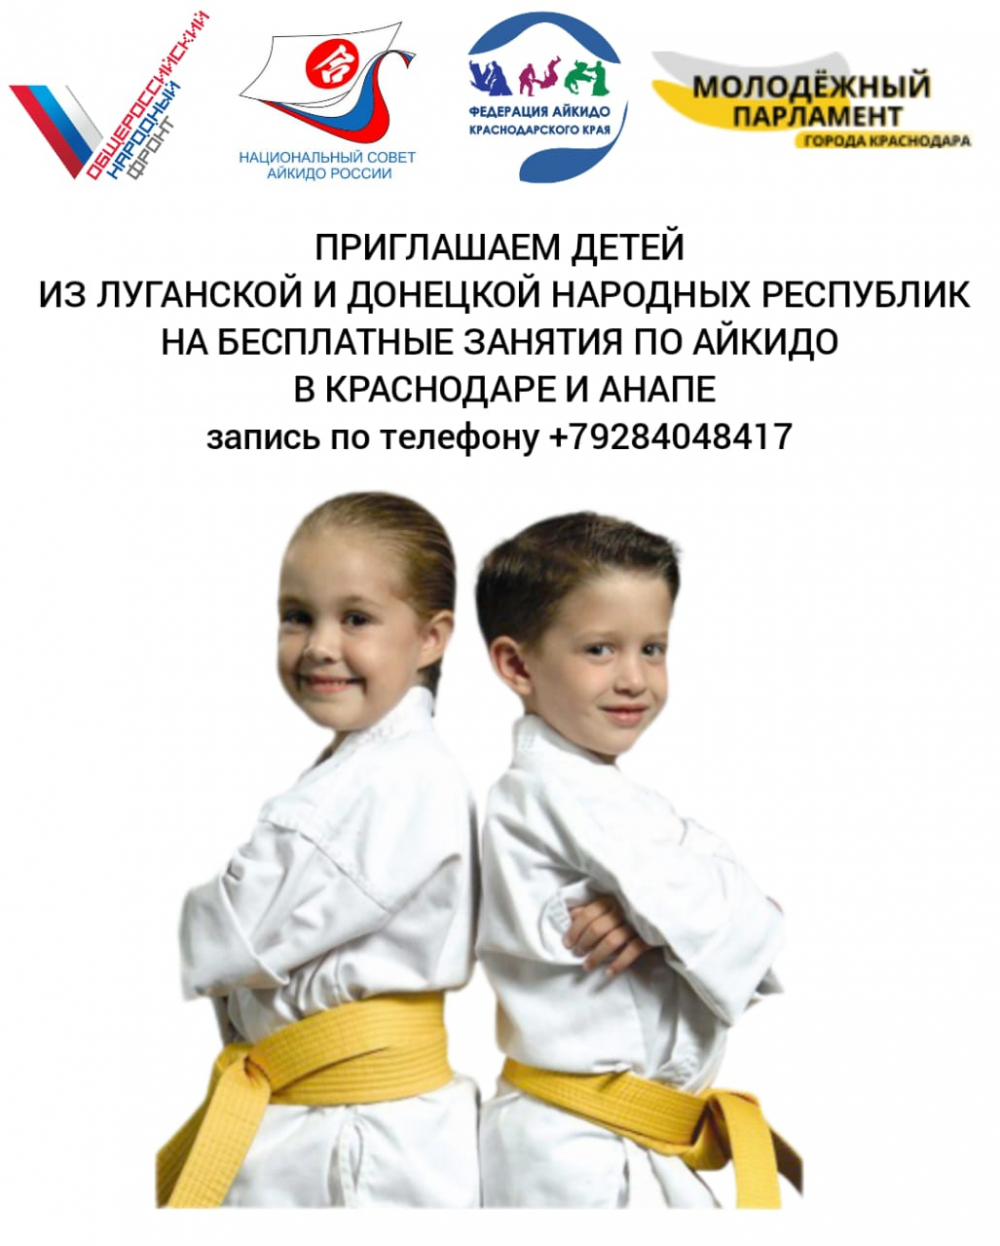 Детей из Донбасса приглашают на бесплатные занятия айкидо в Краснодаре